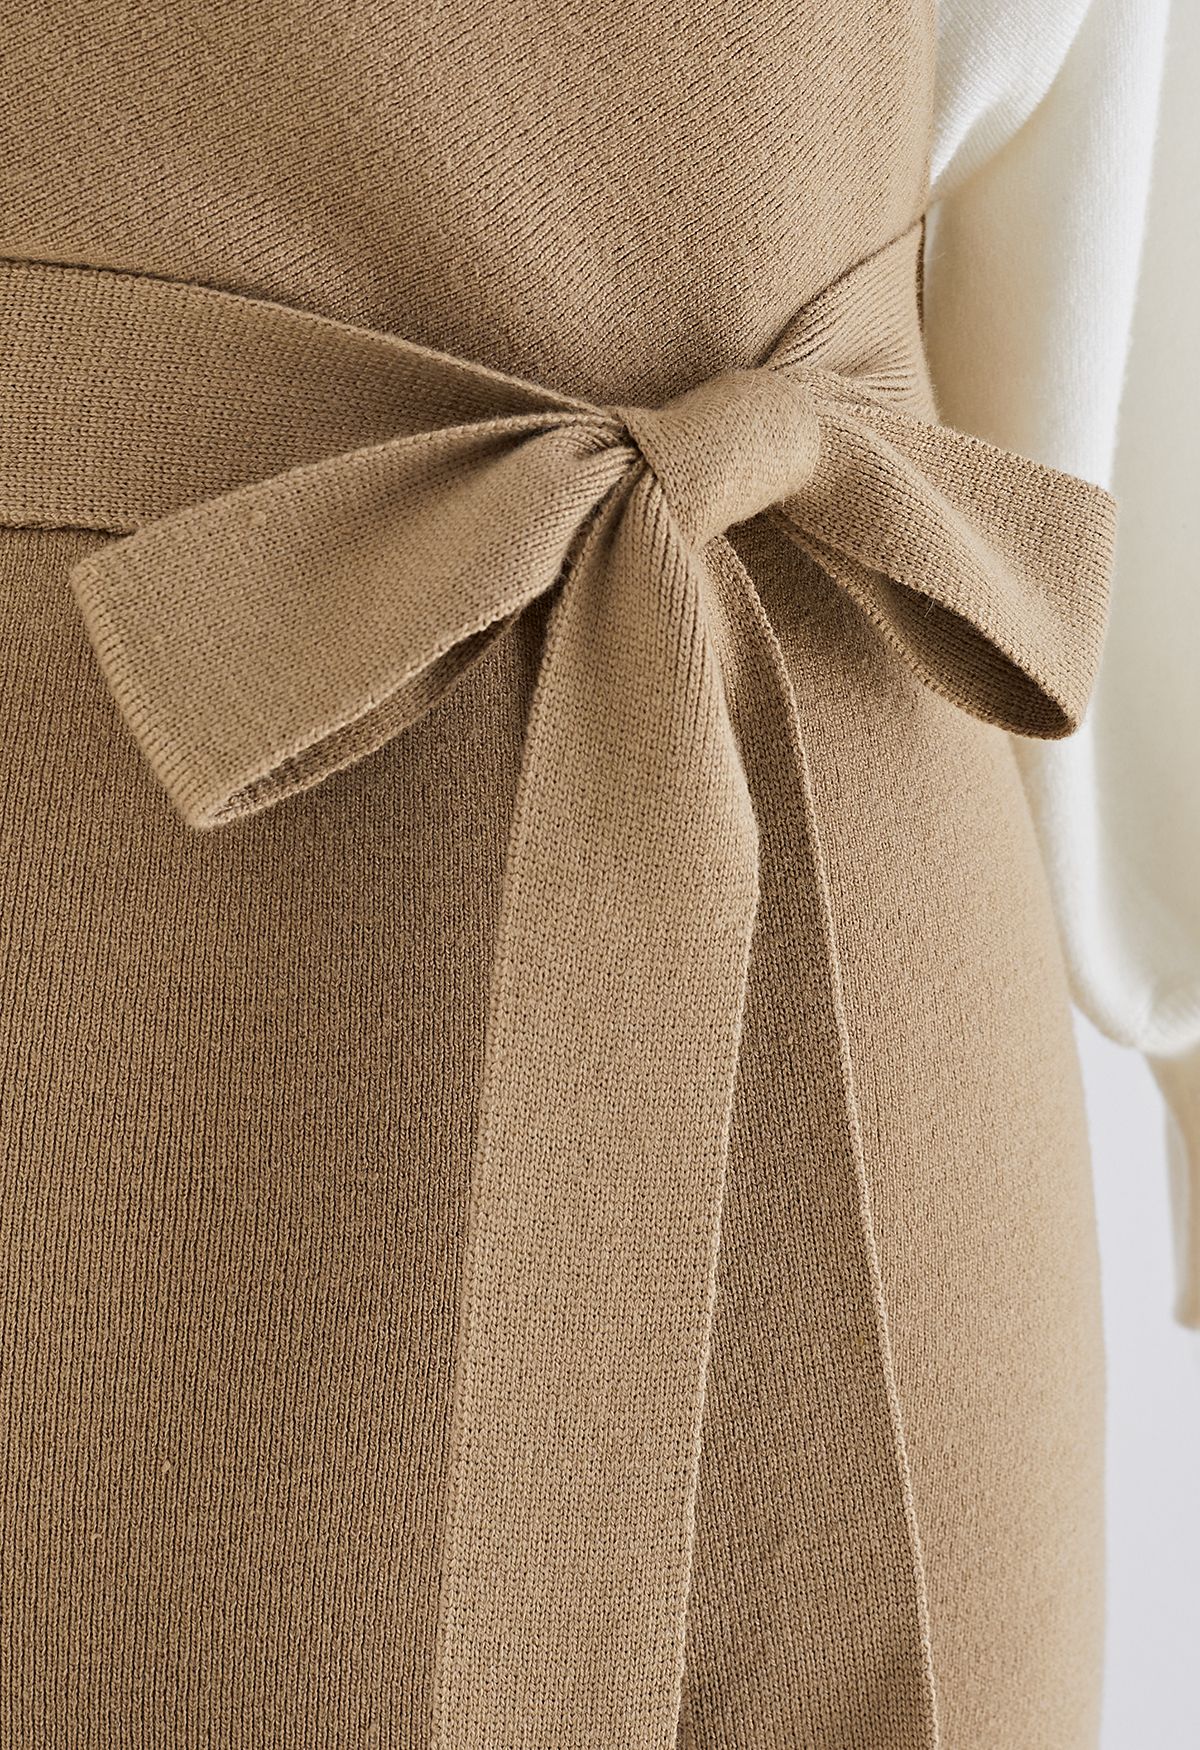 فستان متوسط الطول ملفوف منسوج بلونين مع ربطة عنق باللون البني